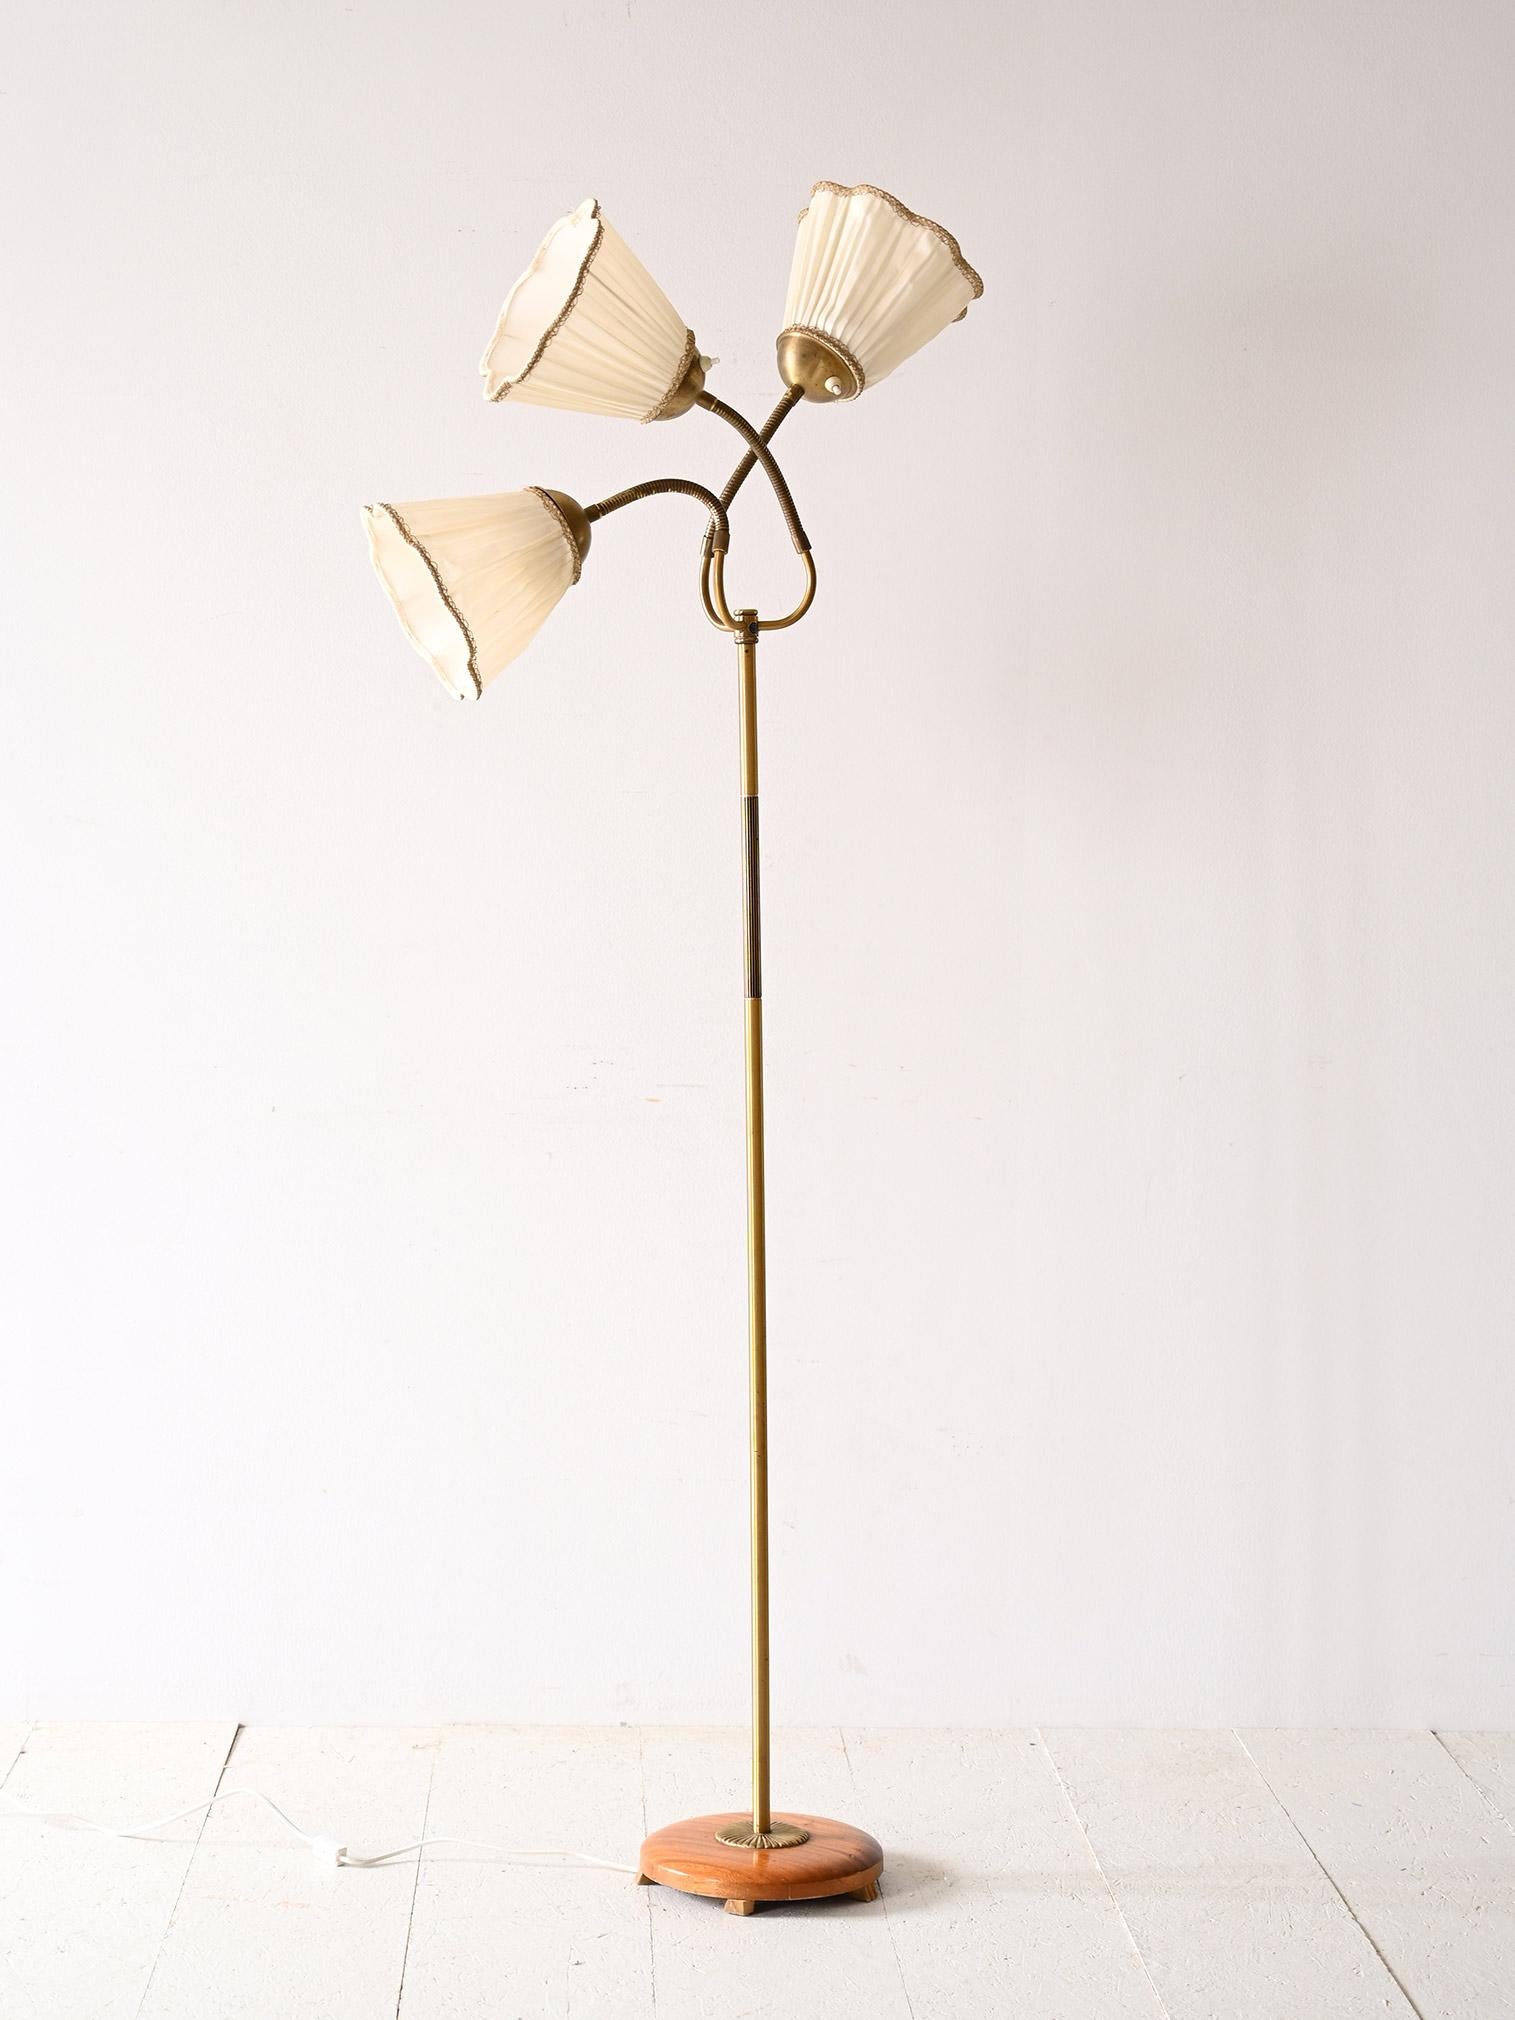 Skandinavische Lampe mit drei verstellbaren Köpfen.

Diese Lampe aus den 1960er Jahren zeichnet sich durch ihr elegantes und funktionelles Design aus, das vom skandinavischen Stil inspiriert ist. Der goldene Metallrahmen verleiht der Leuchte einen